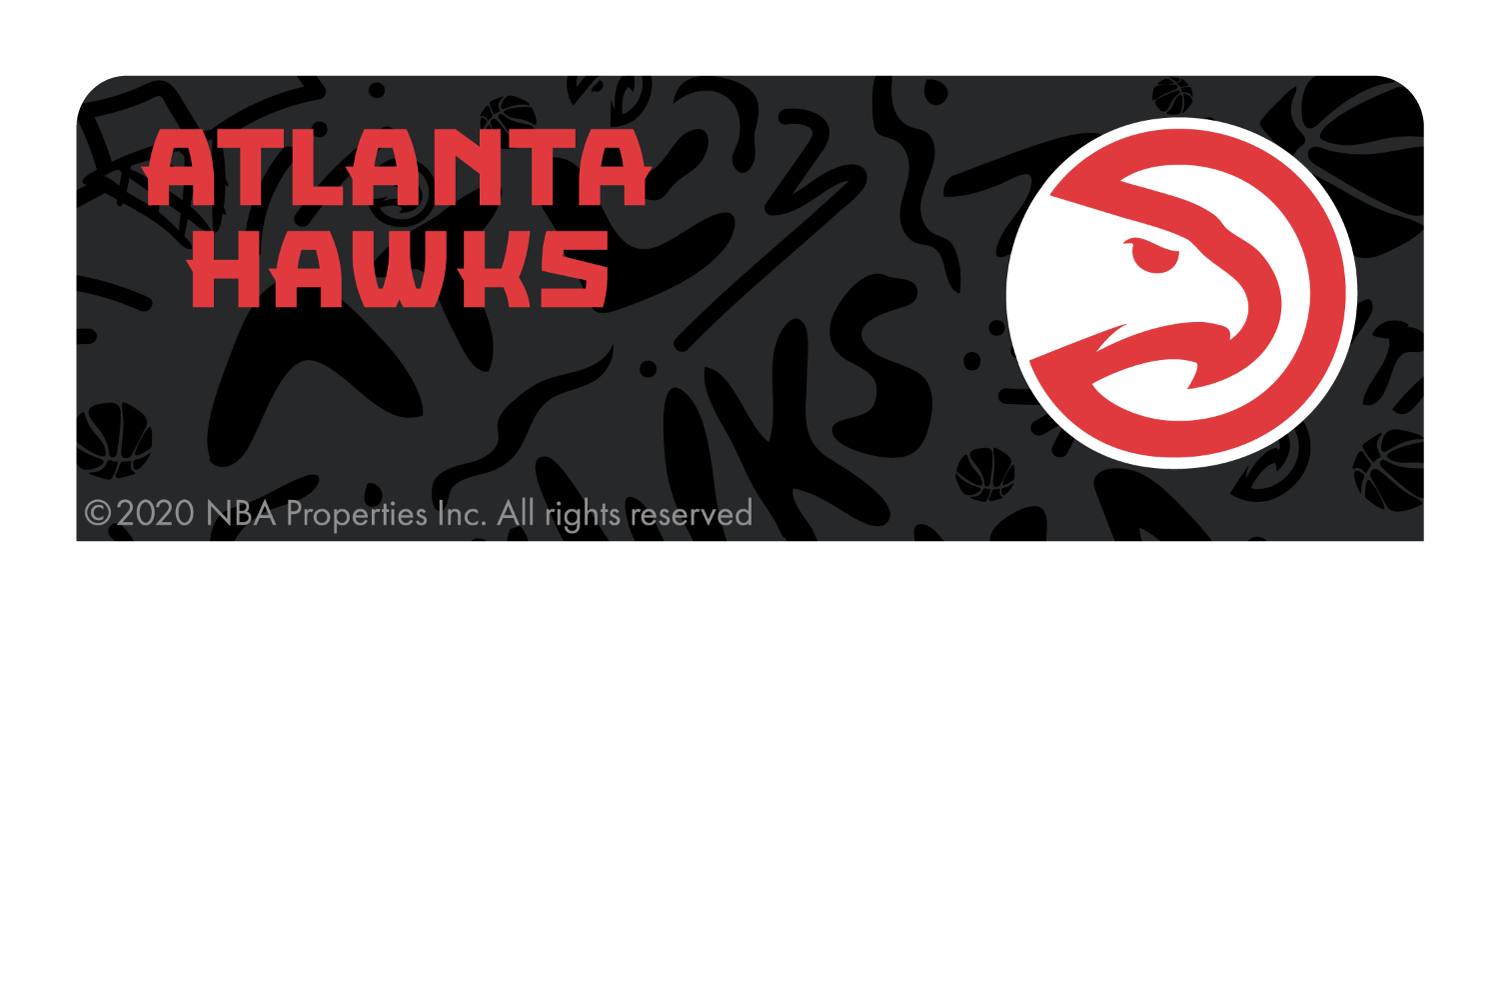 Atlanta Hawks: Team Mural